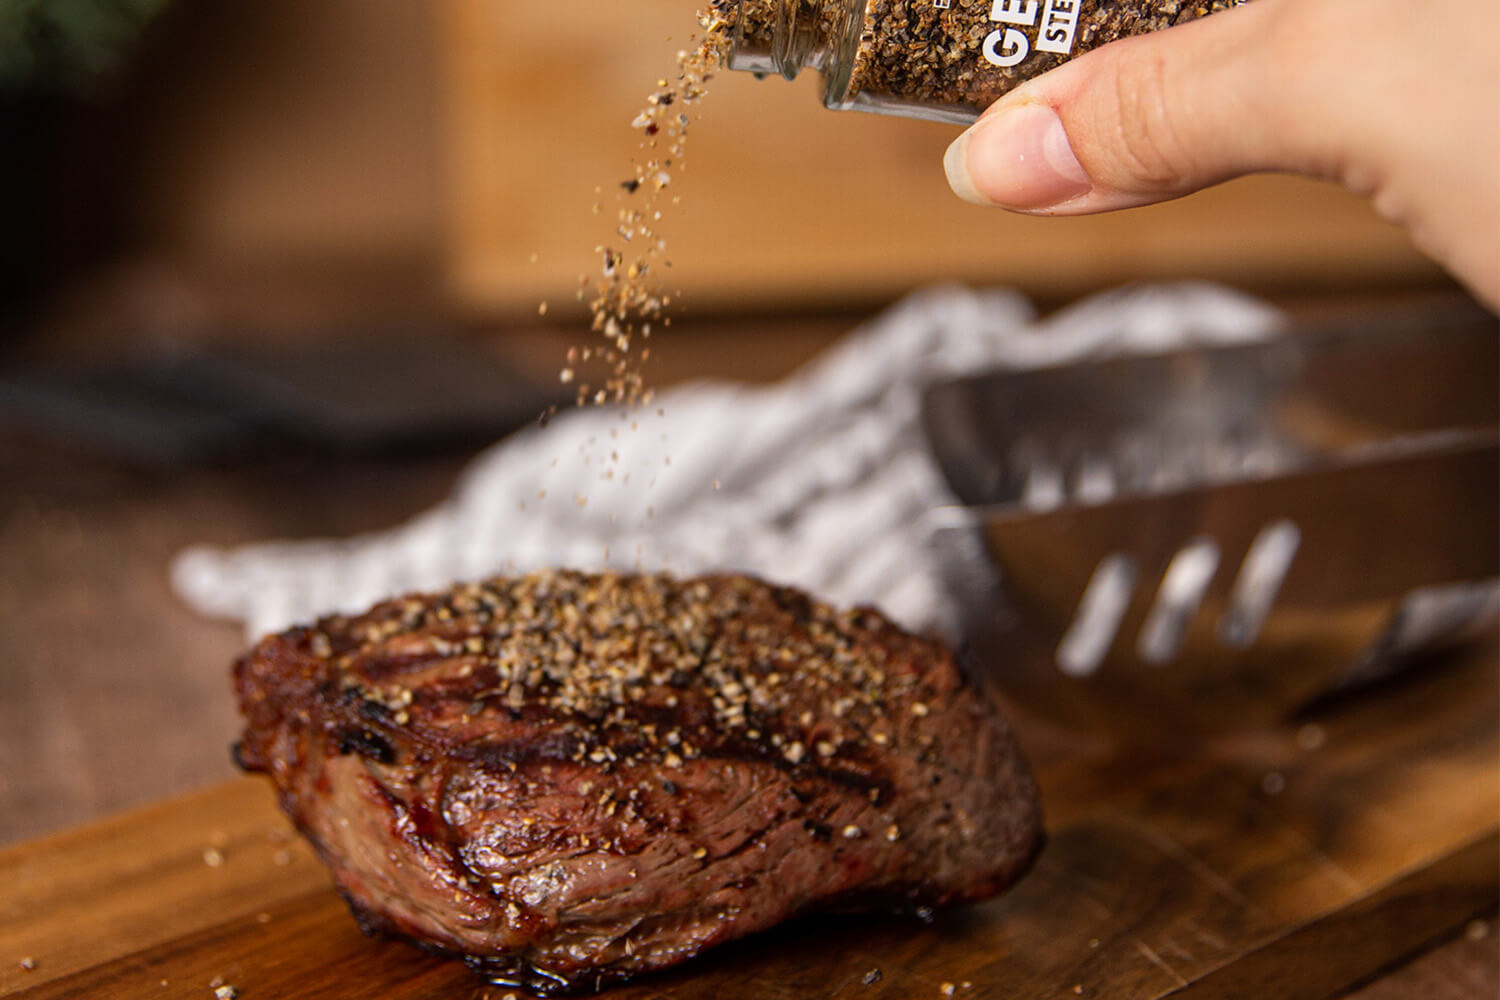 Steak Talent - Bio-Gewürzmischung von Besser im Glas in Aktion. Schnell und einfach dazugeben und leckeres Steak-Gericht genießen